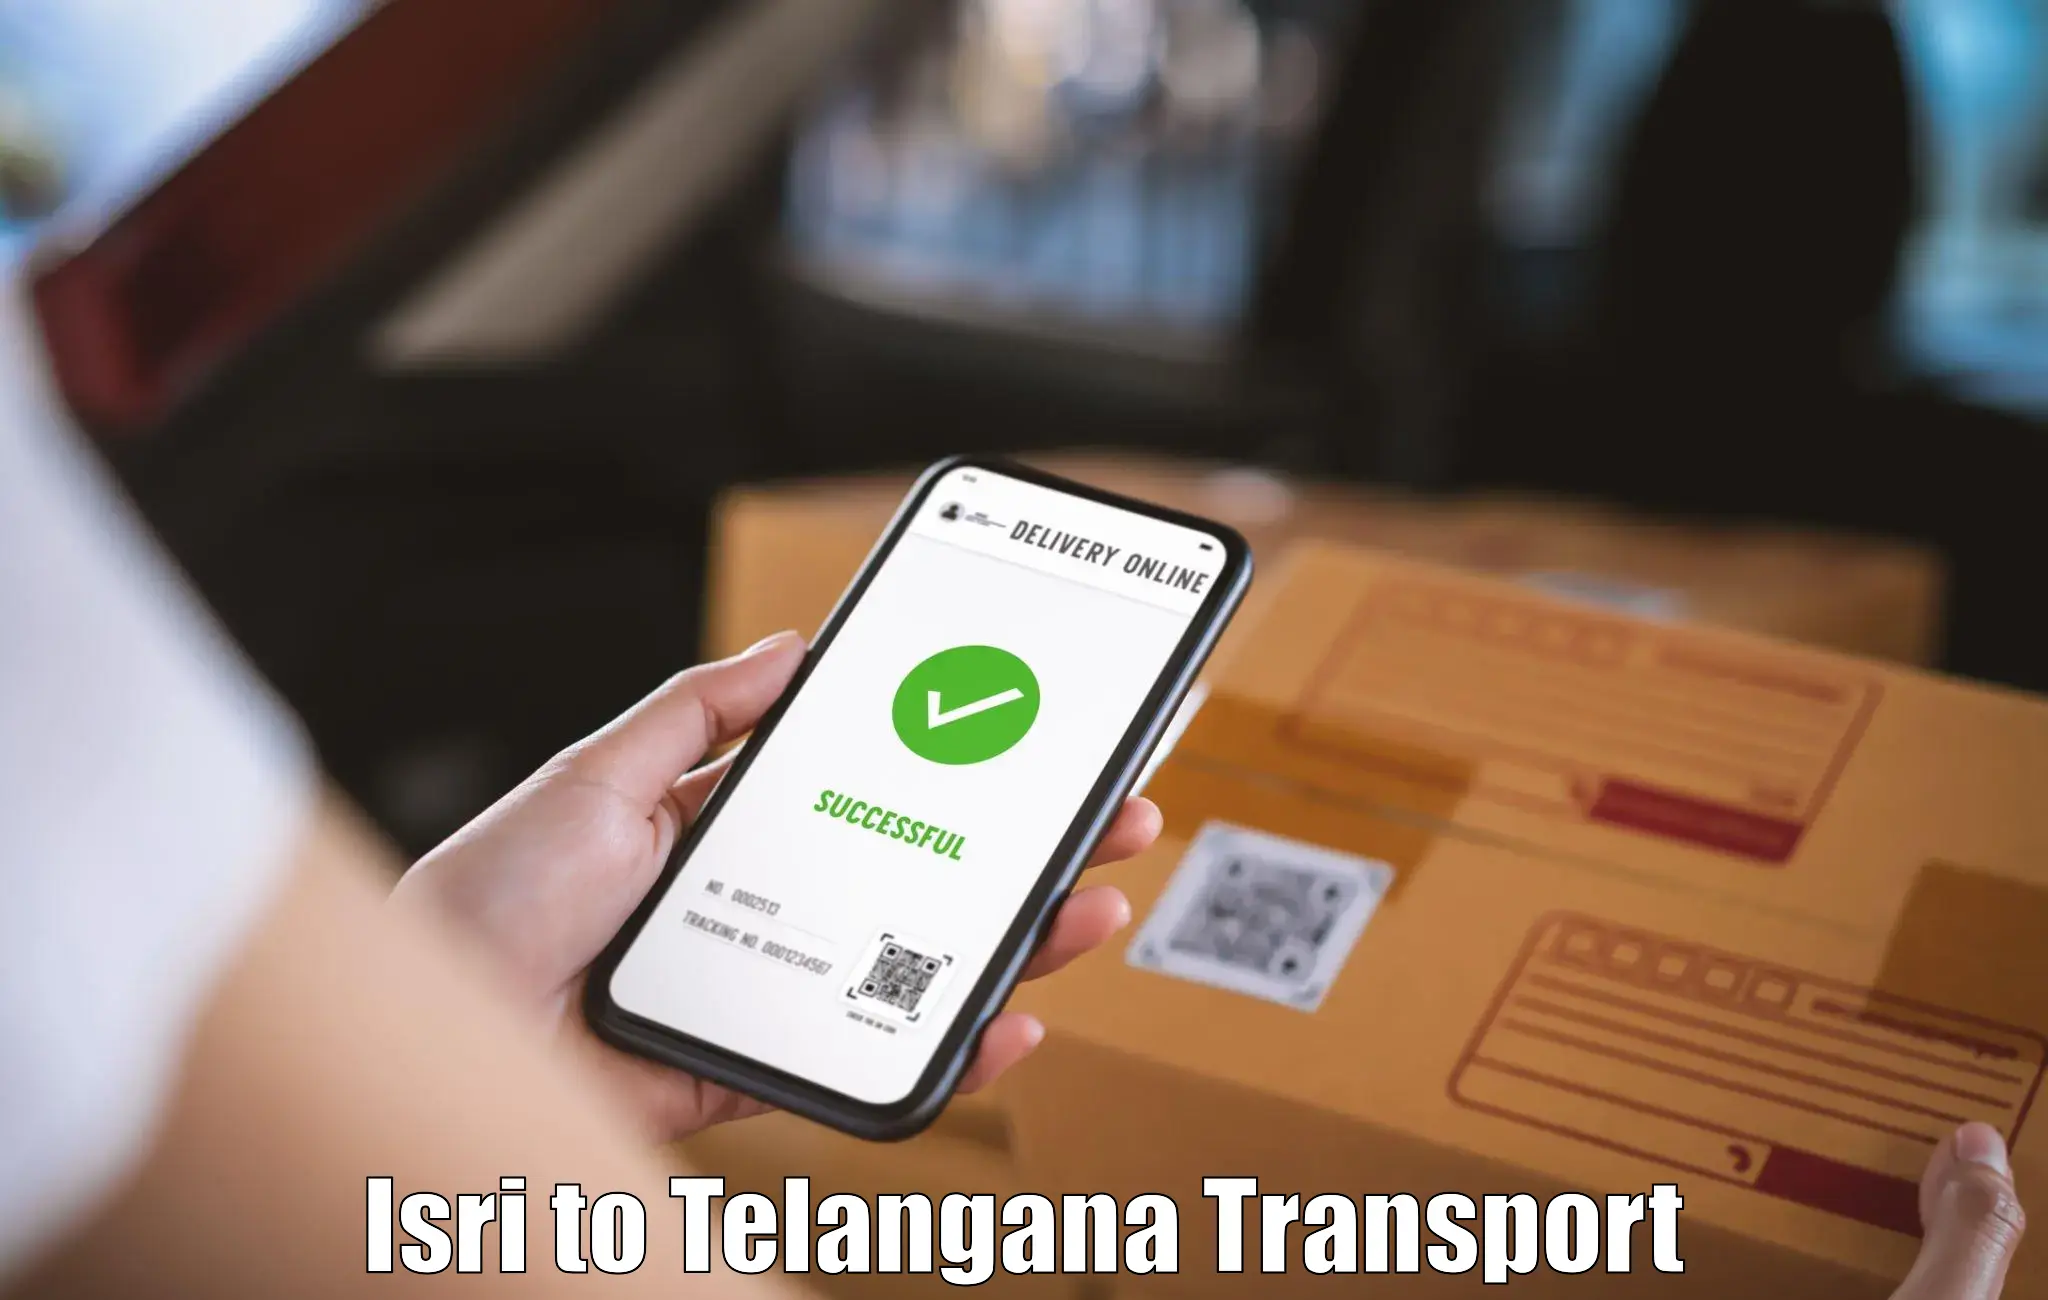 Transport shared services Isri to Kothagudem